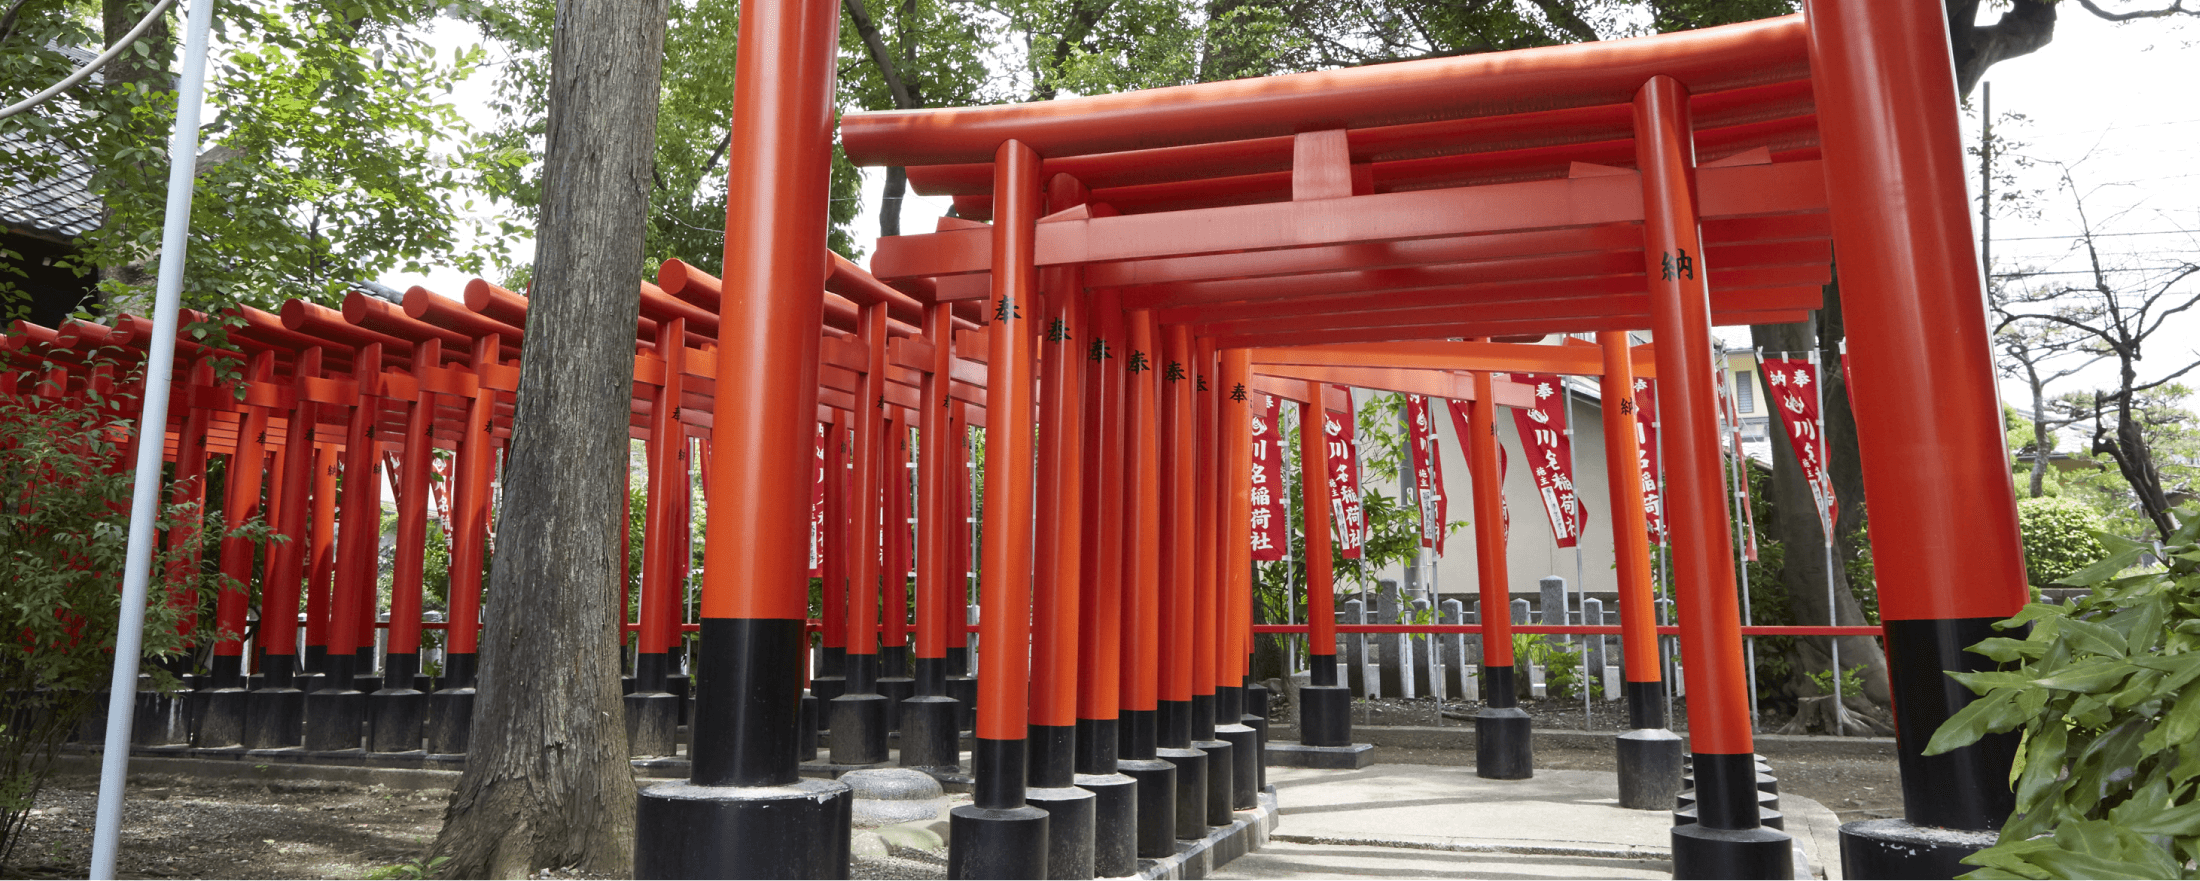 赤い鳥居が並ぶ、川原神社のお稲荷さん。